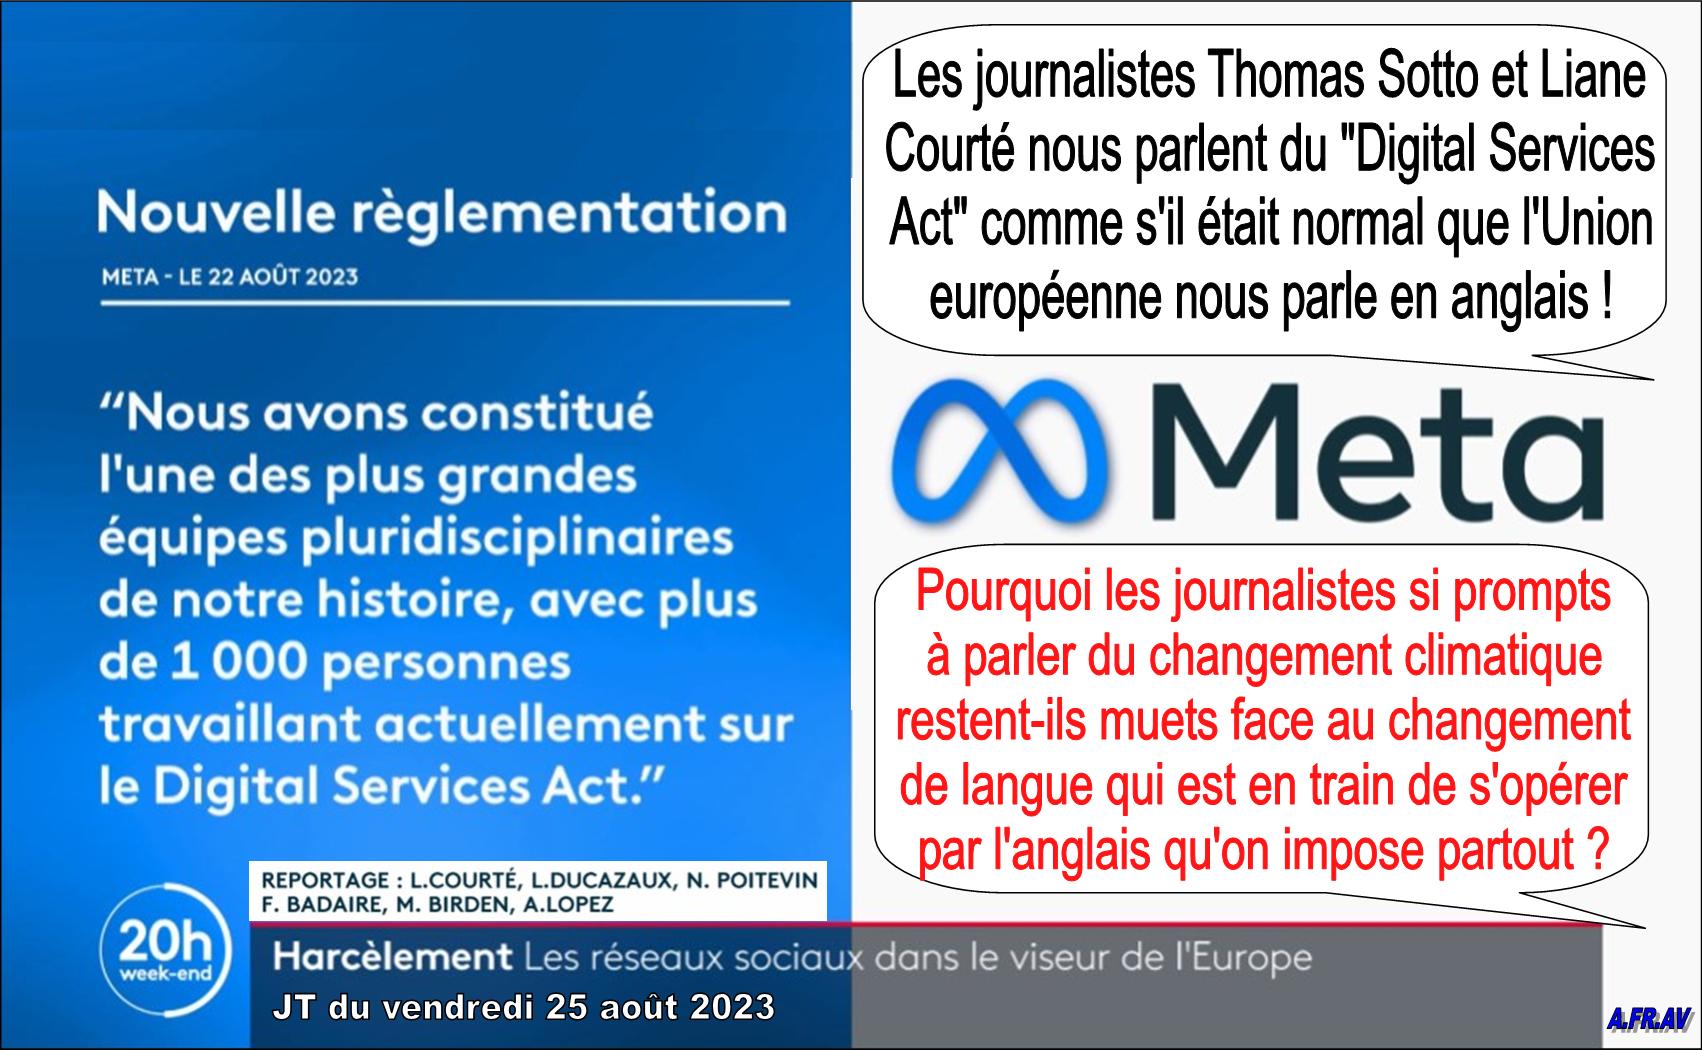 Liane Courté, Thomas Sotto, Digital Services Act, 20h de France 2, France Télévisions